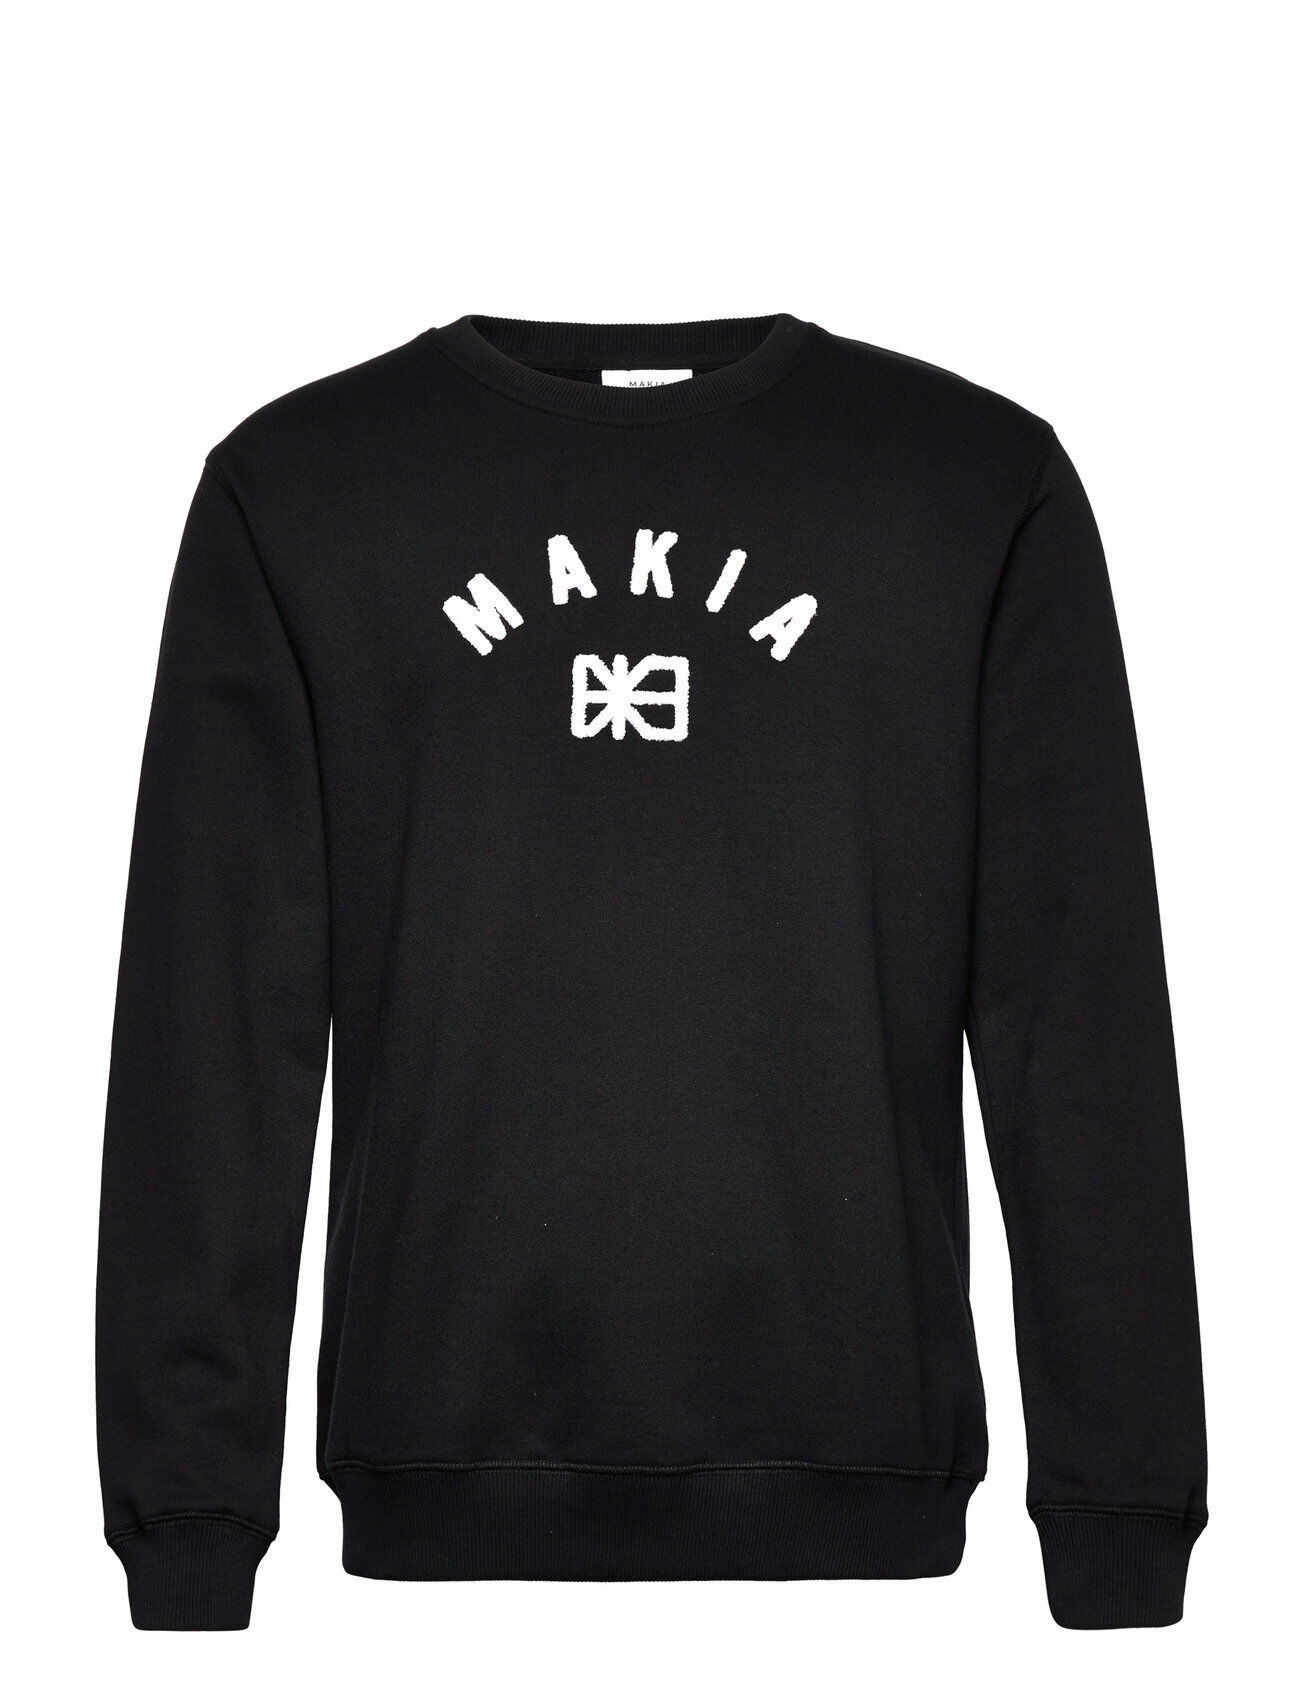 Makia Brand Sweatshirt Sweat-shirt Genser Svart Makia